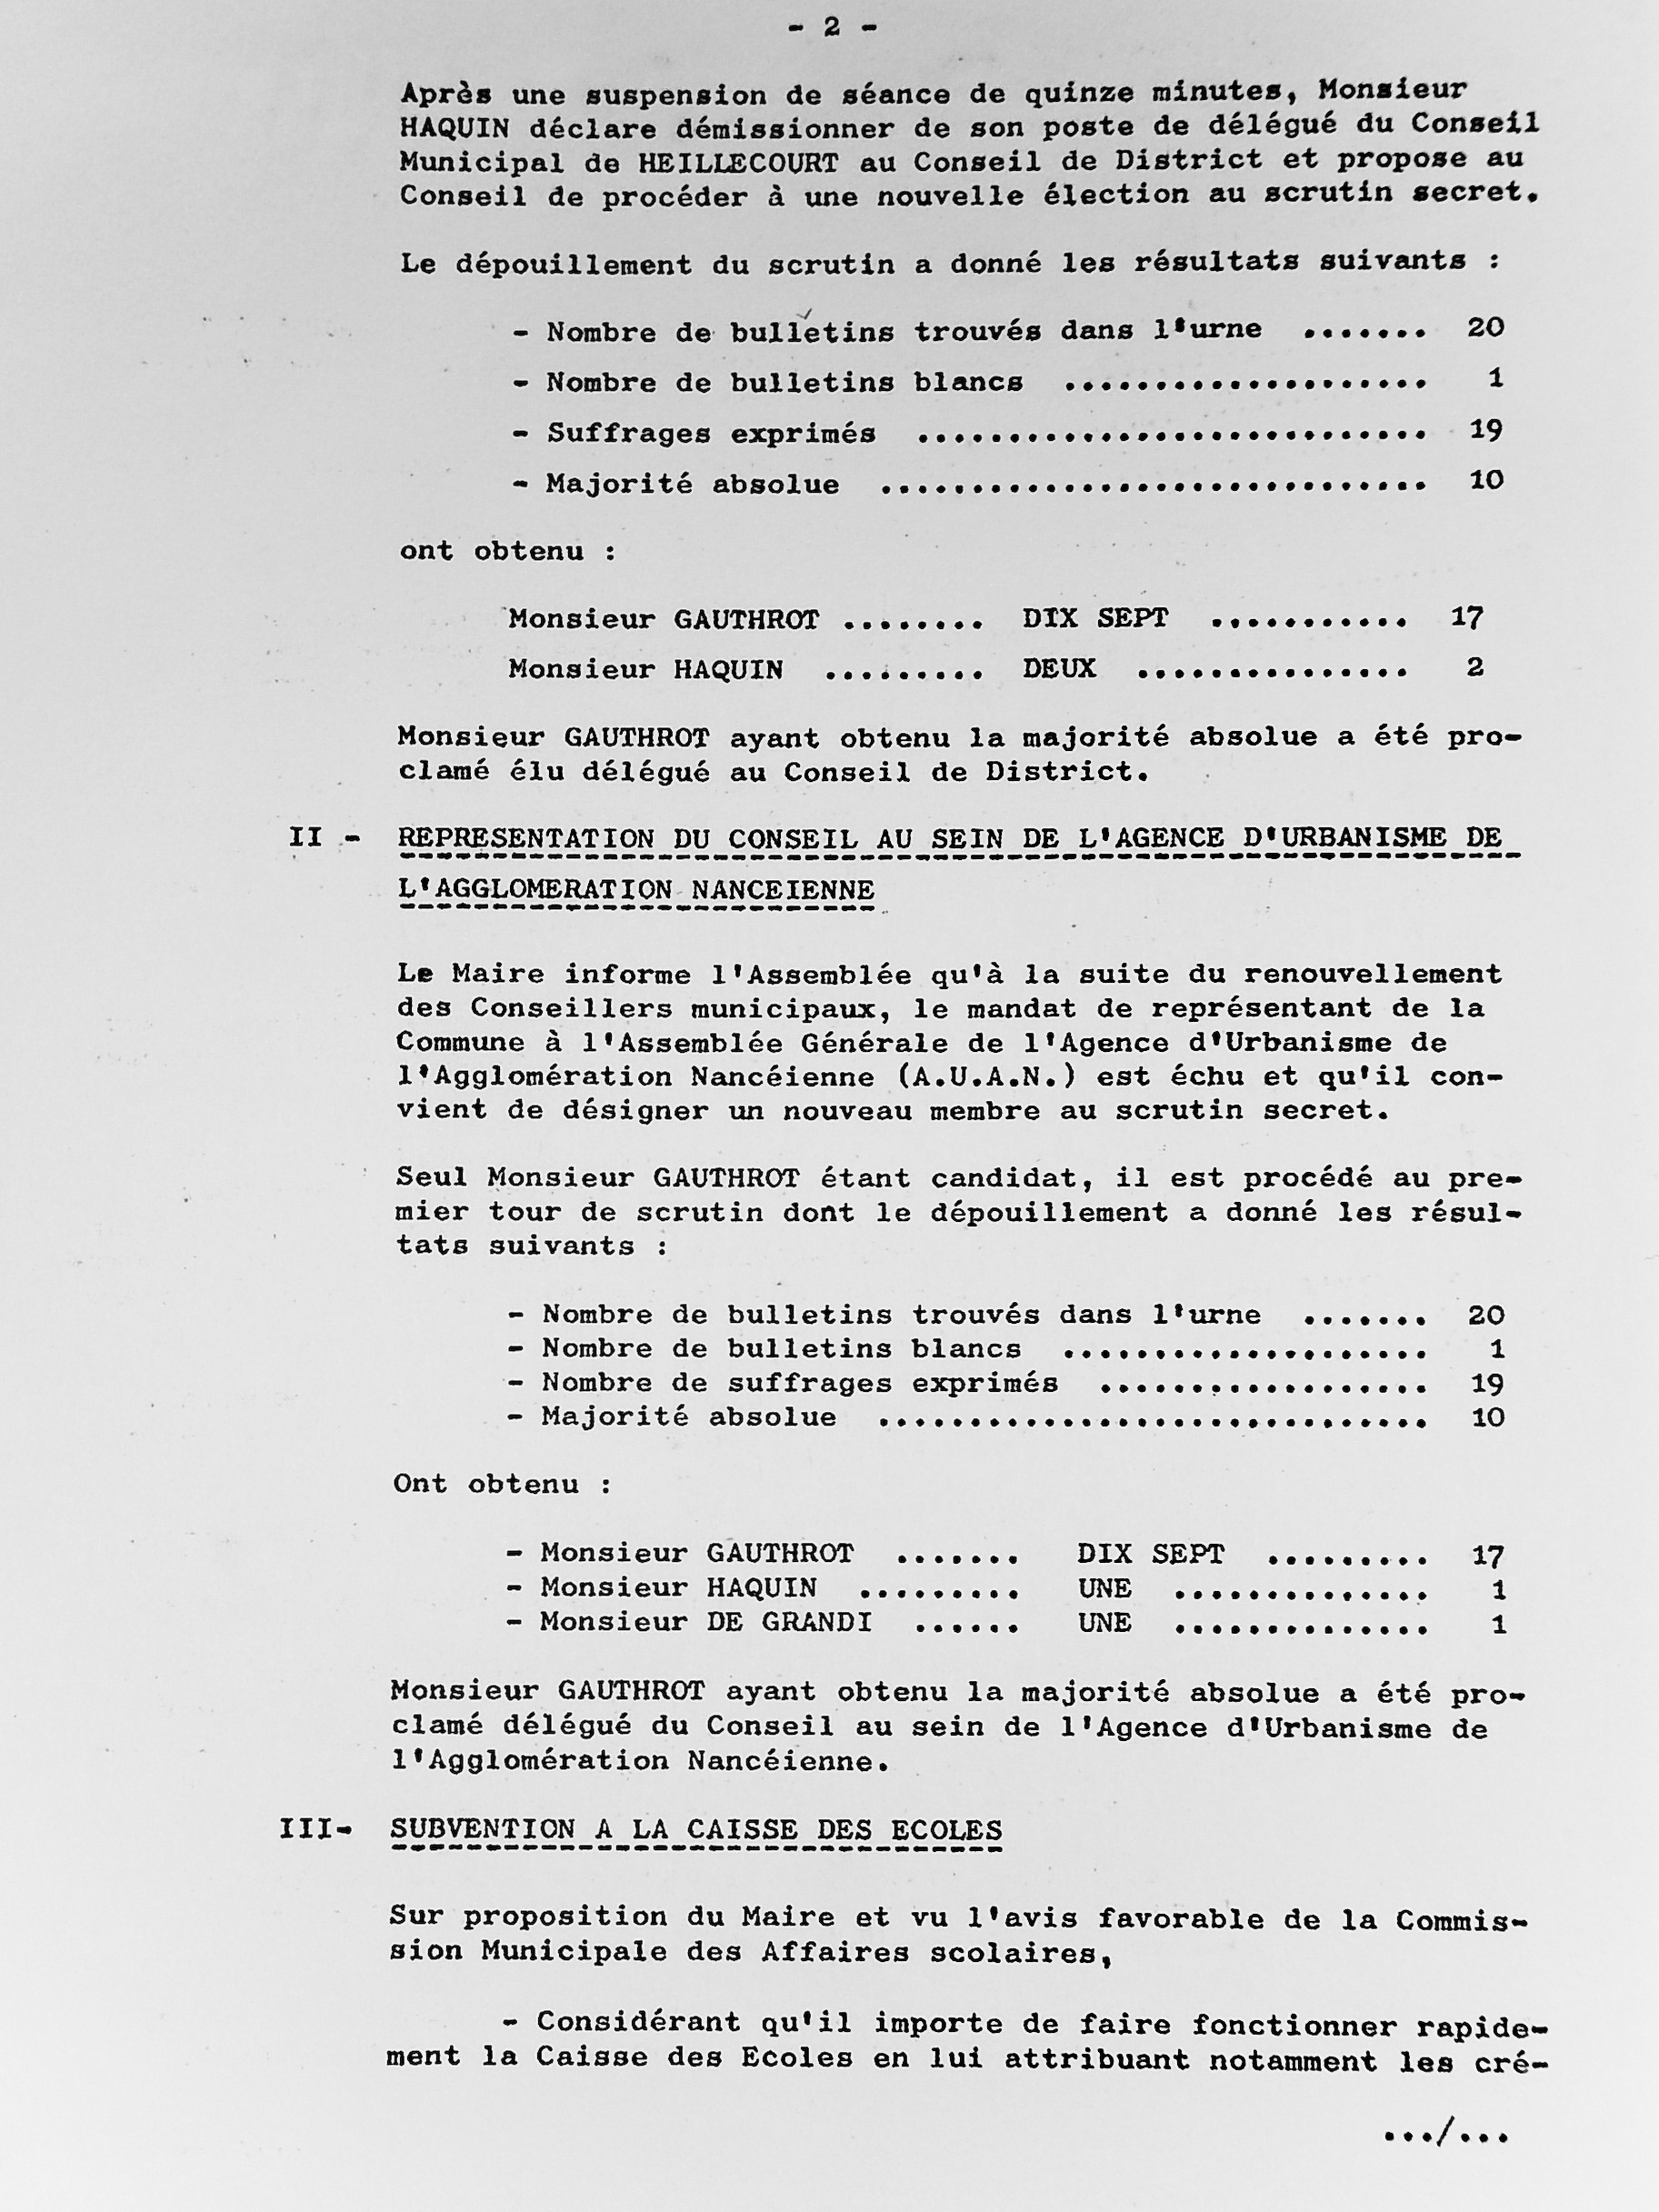 Feuillet_105B-1974-1977.jpg